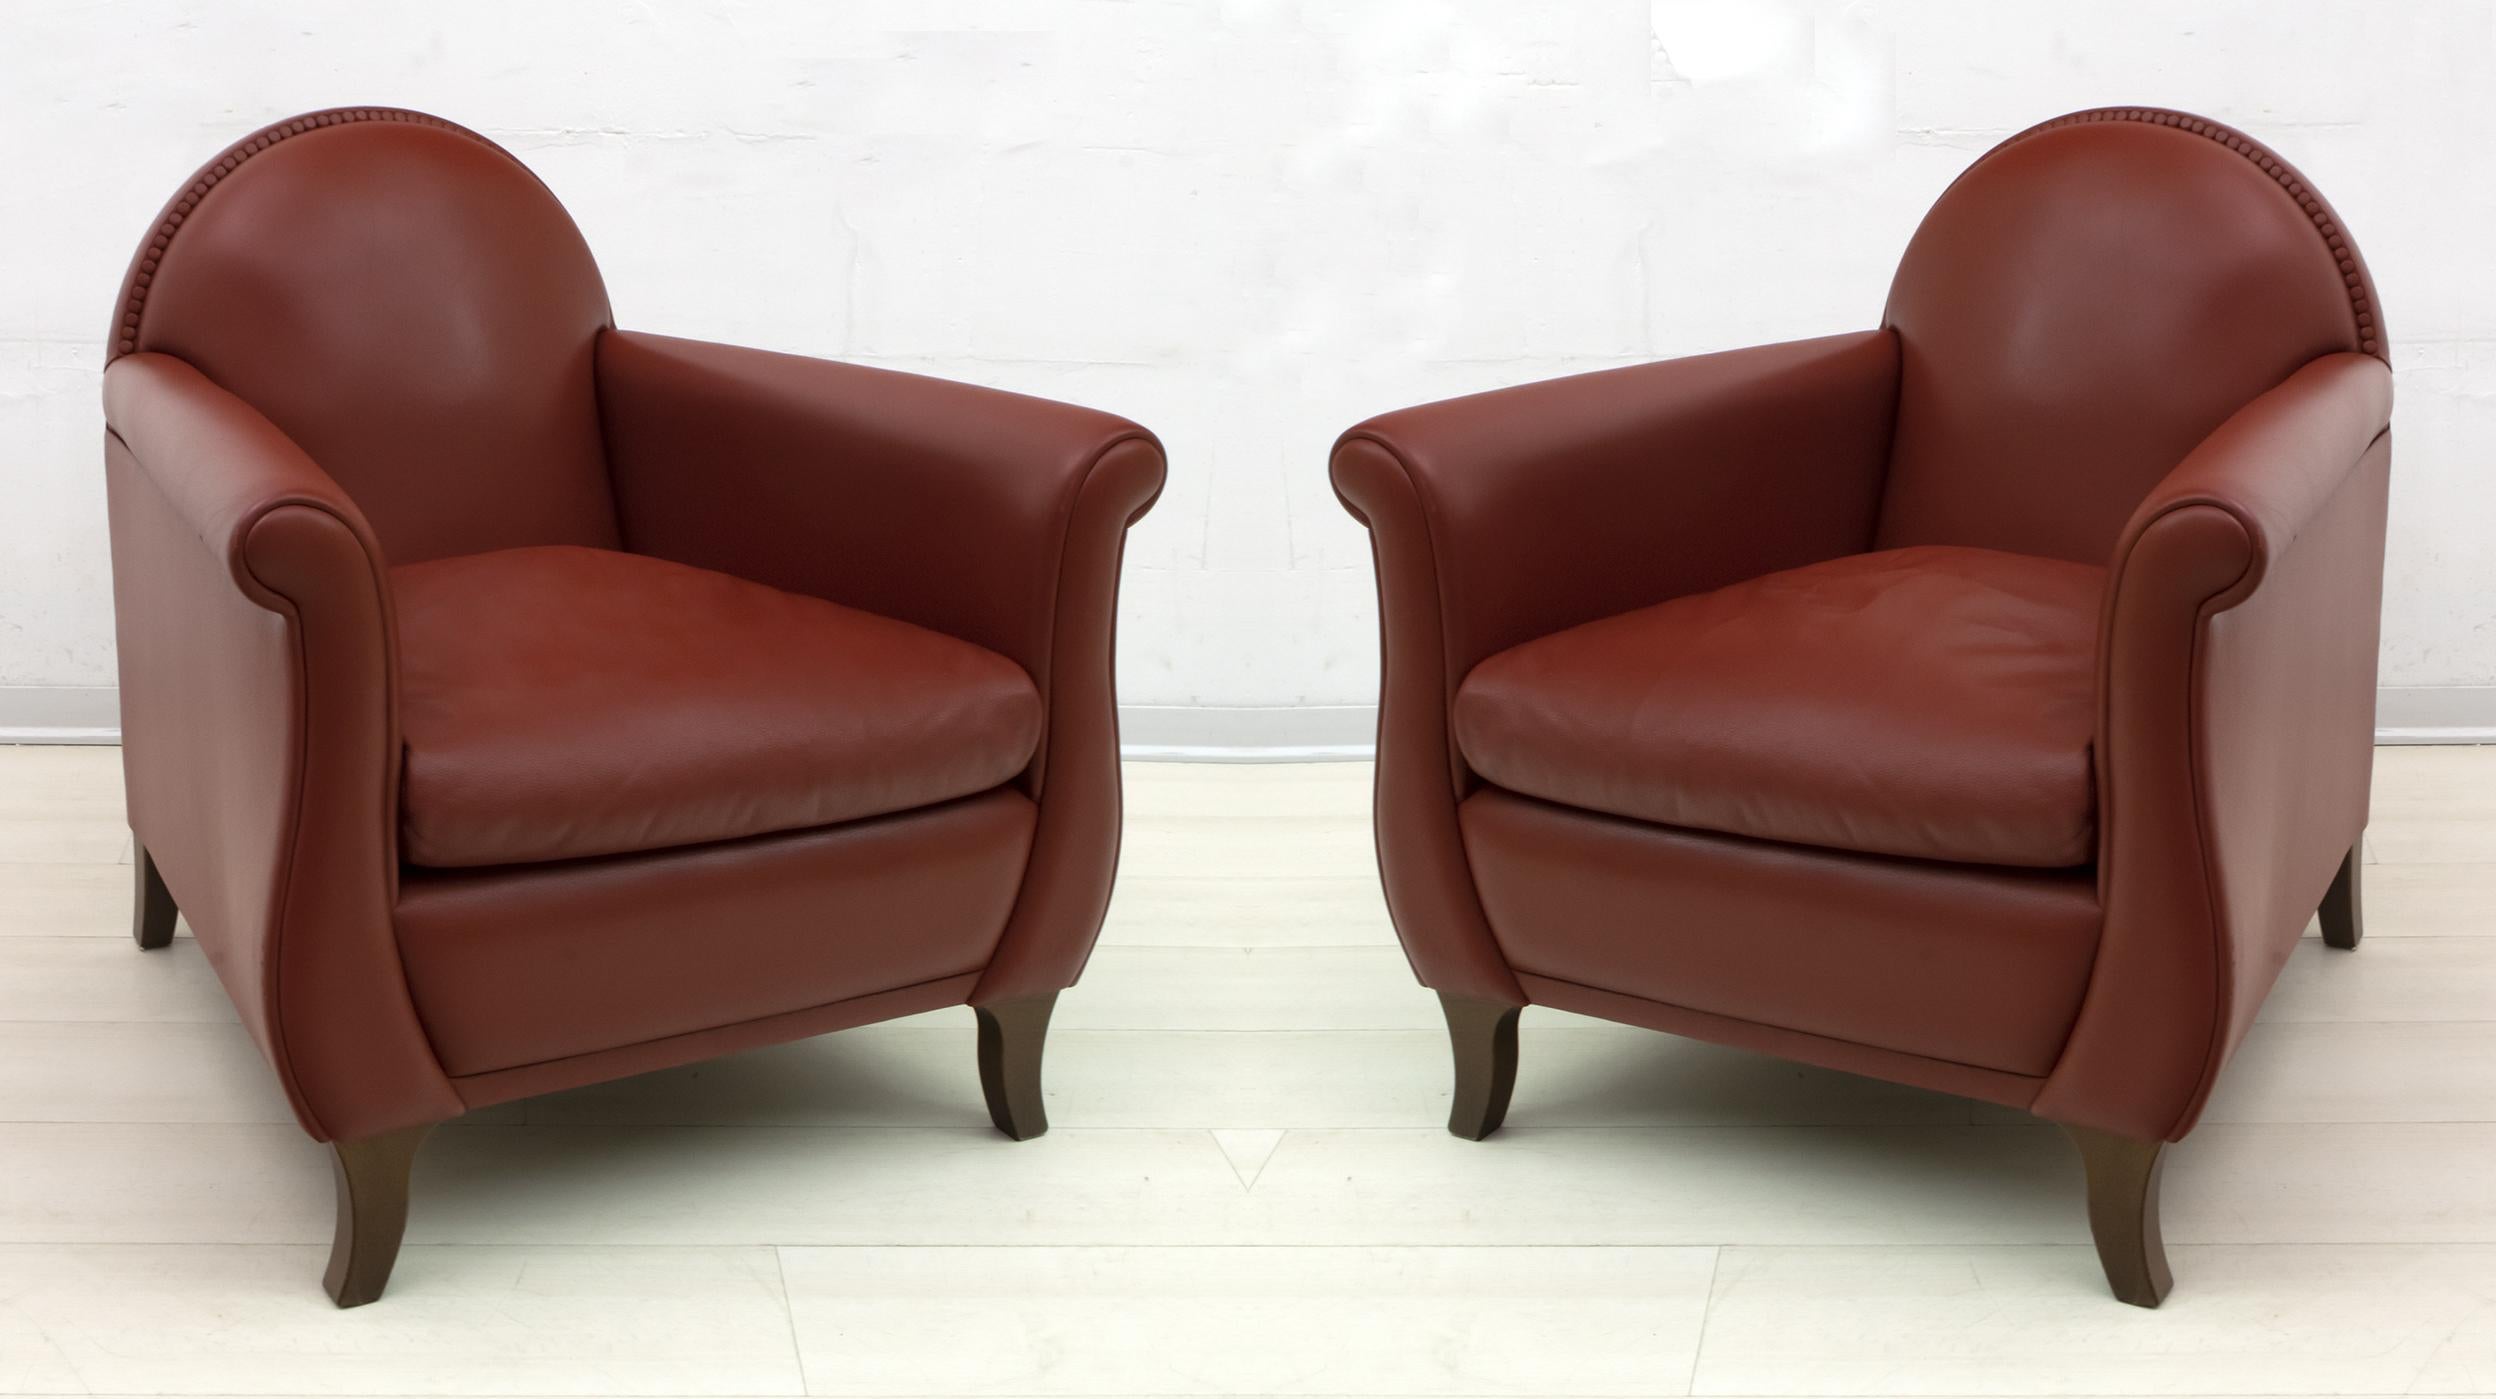 Le fauteuil Lyra de Poltrona Frau est un design emblématique de la collection historique de Poltrona Frau. Le Lyra, entièrement fabriqué en cuir, a été remarqué pour la première fois en 1934 et peut être considéré comme une évolution du fauteuil